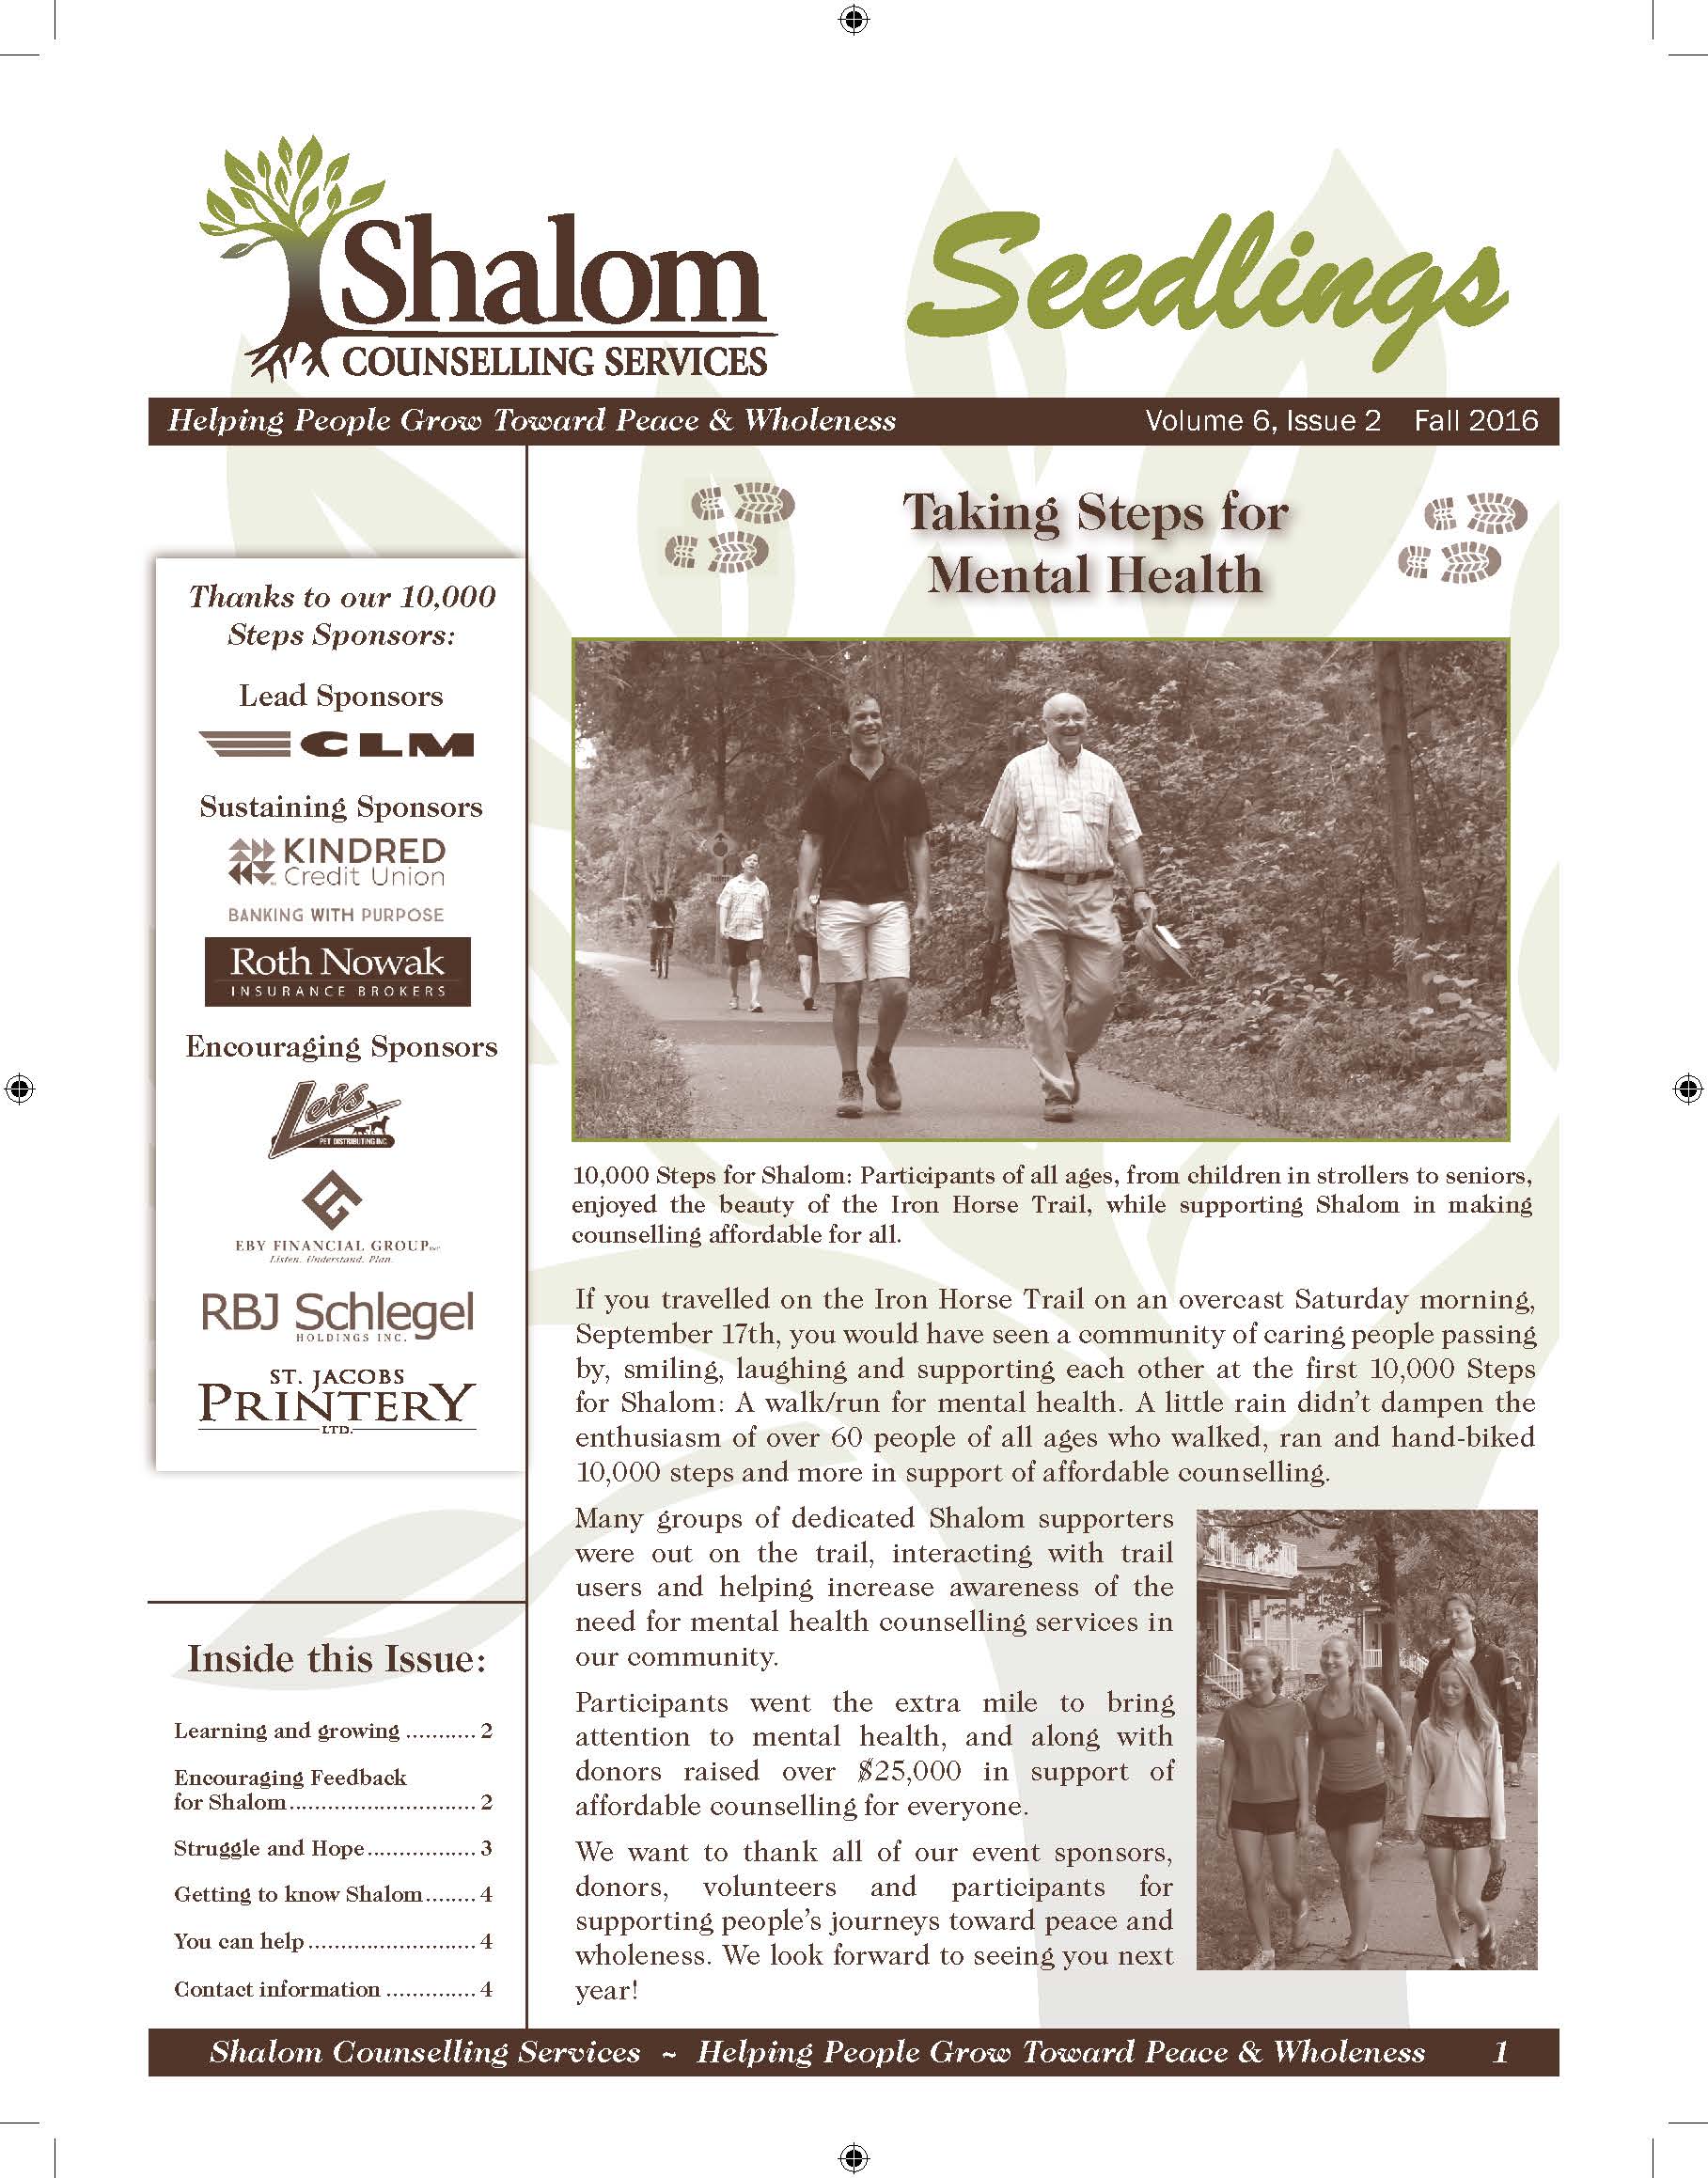 Fall 2016 Seedlings Newsletter